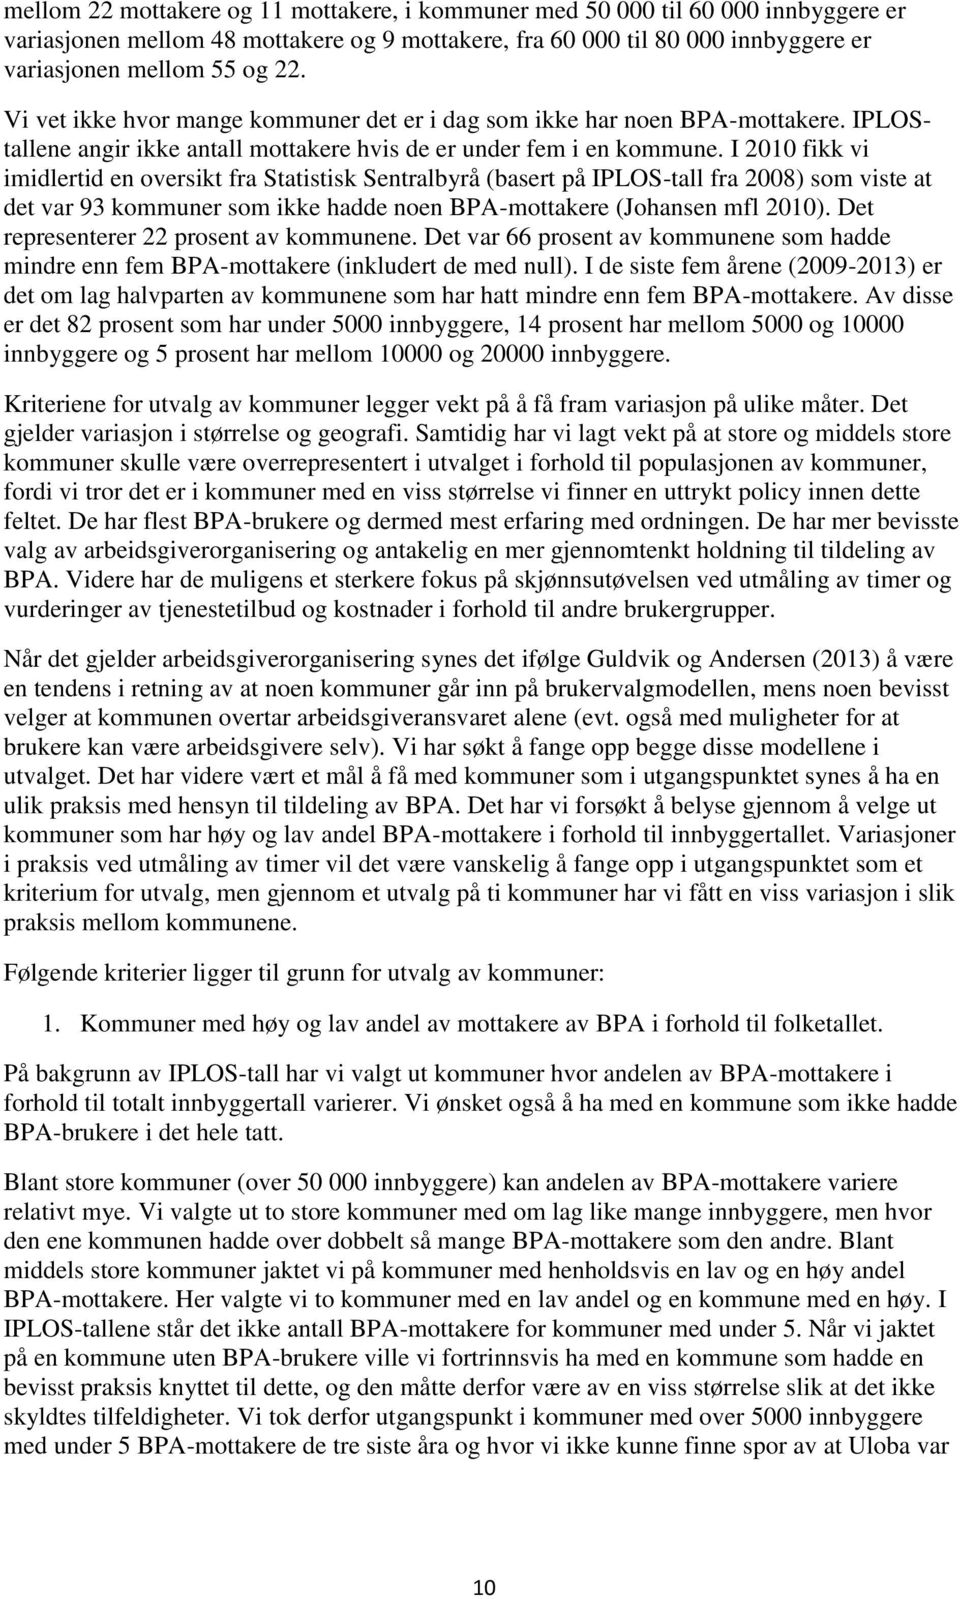 I 2010 fikk vi imidlertid en oversikt fra Statistisk Sentralbyrå (basert på IPLOS-tall fra 2008) som viste at det var 93 kommuner som ikke hadde noen BPA-mottakere (Johansen mfl 2010).